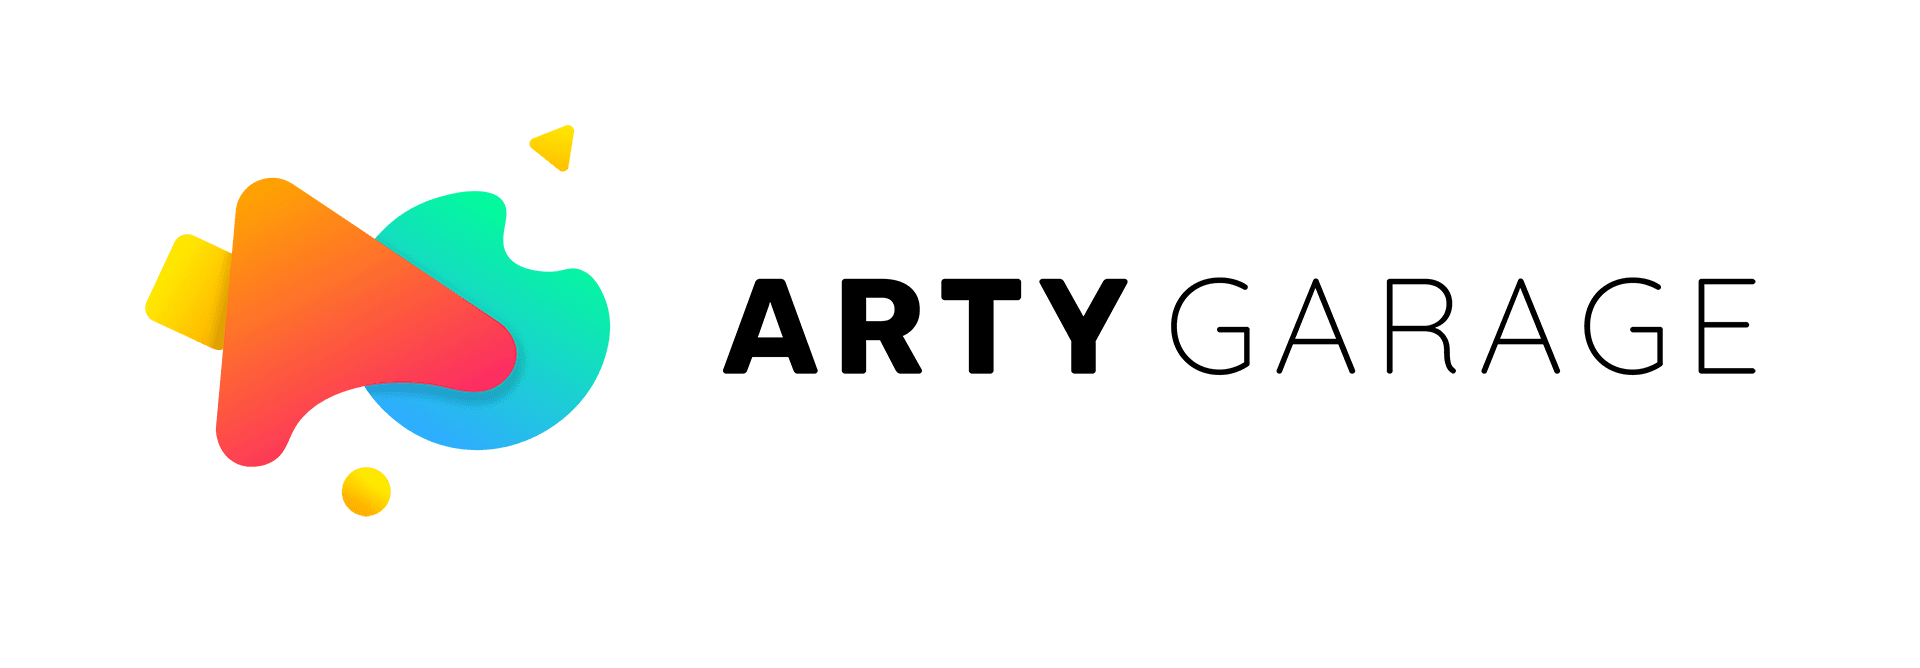 Logo d'Arty Garage, avec l'image colorée et l'ecriture du nom. 